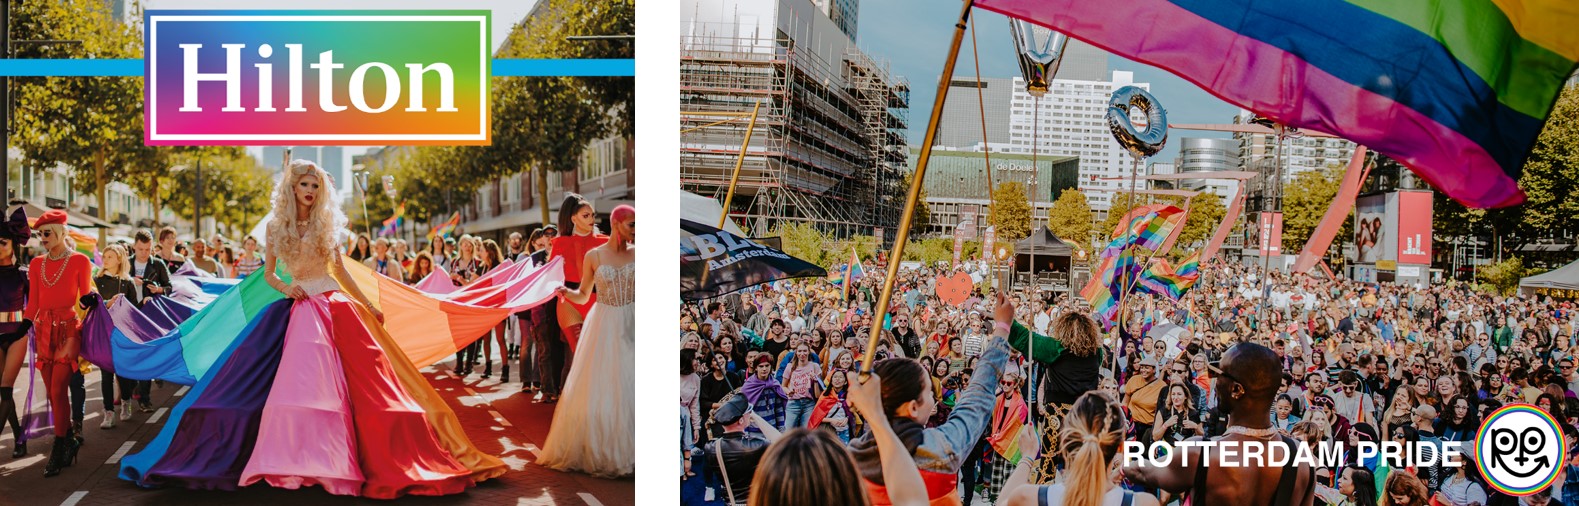 Roots en Rotterdam Pride organiseren uitbundige zondagbrunch